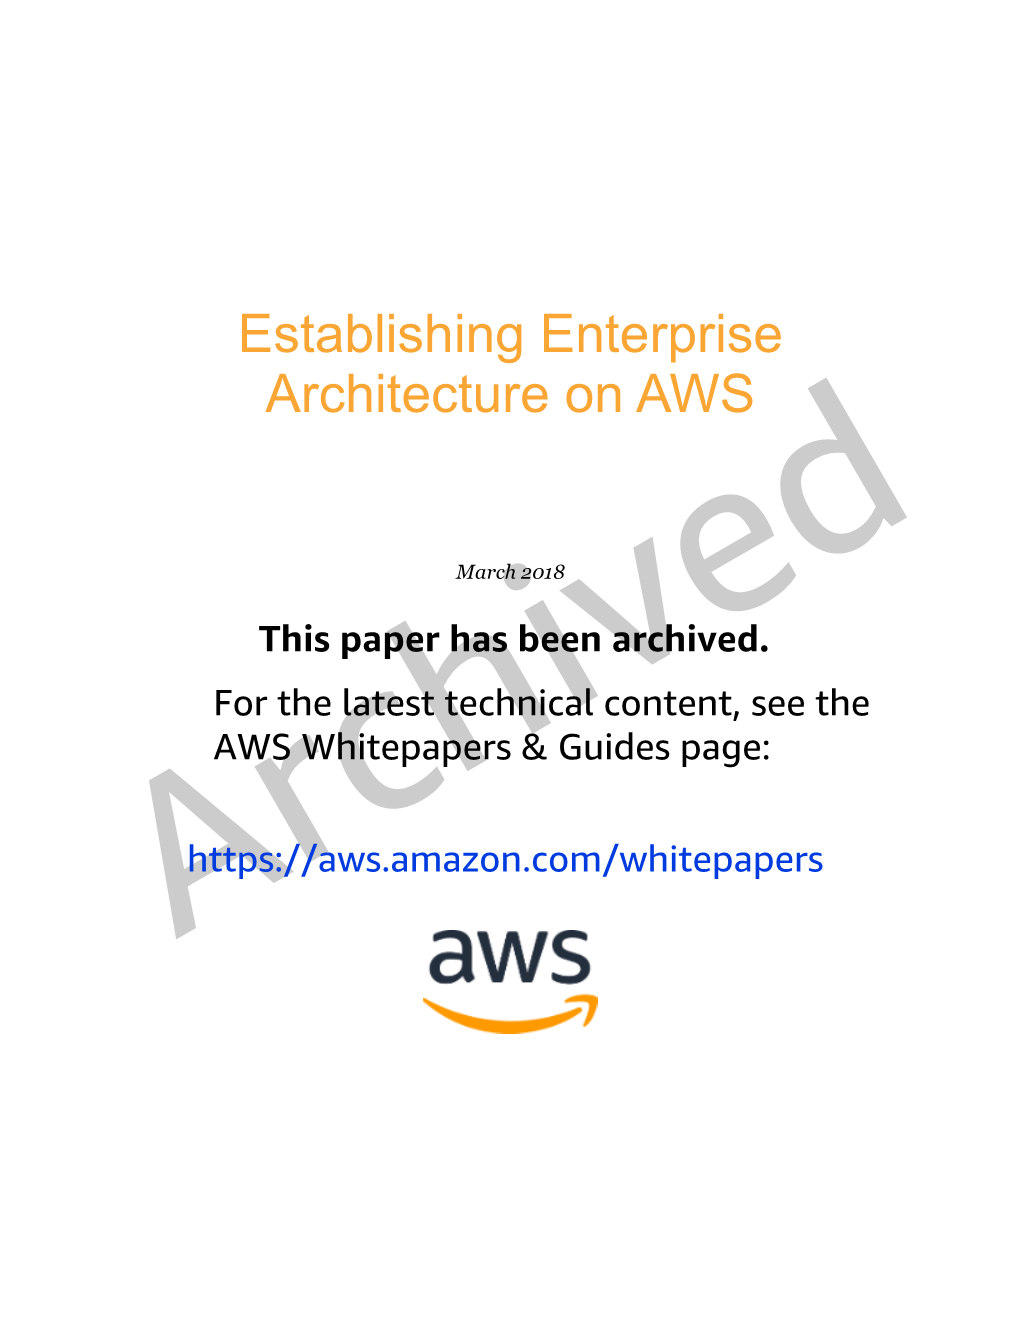 Establishing Enterprise Architecture on AWS